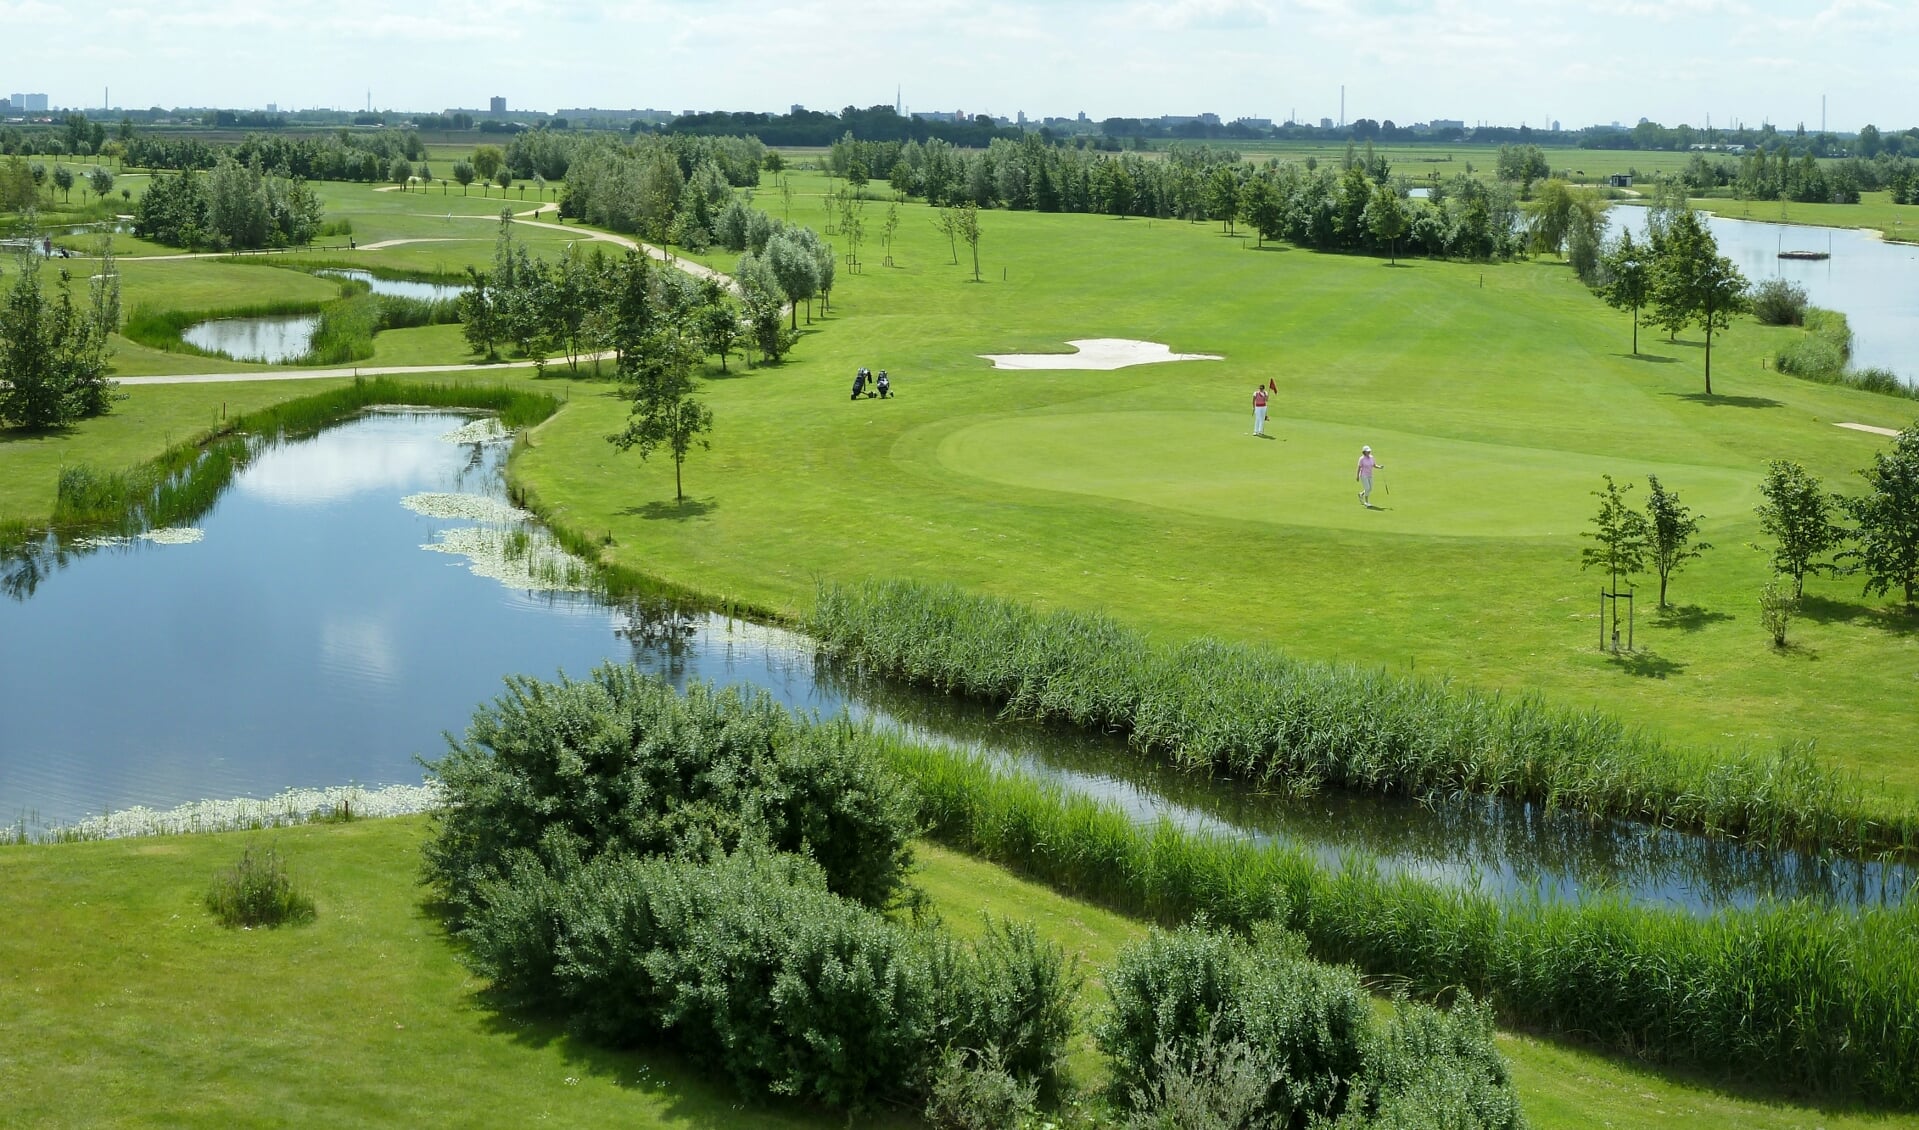 Golfbaan Delfland: een pracht van een golfbaan. 